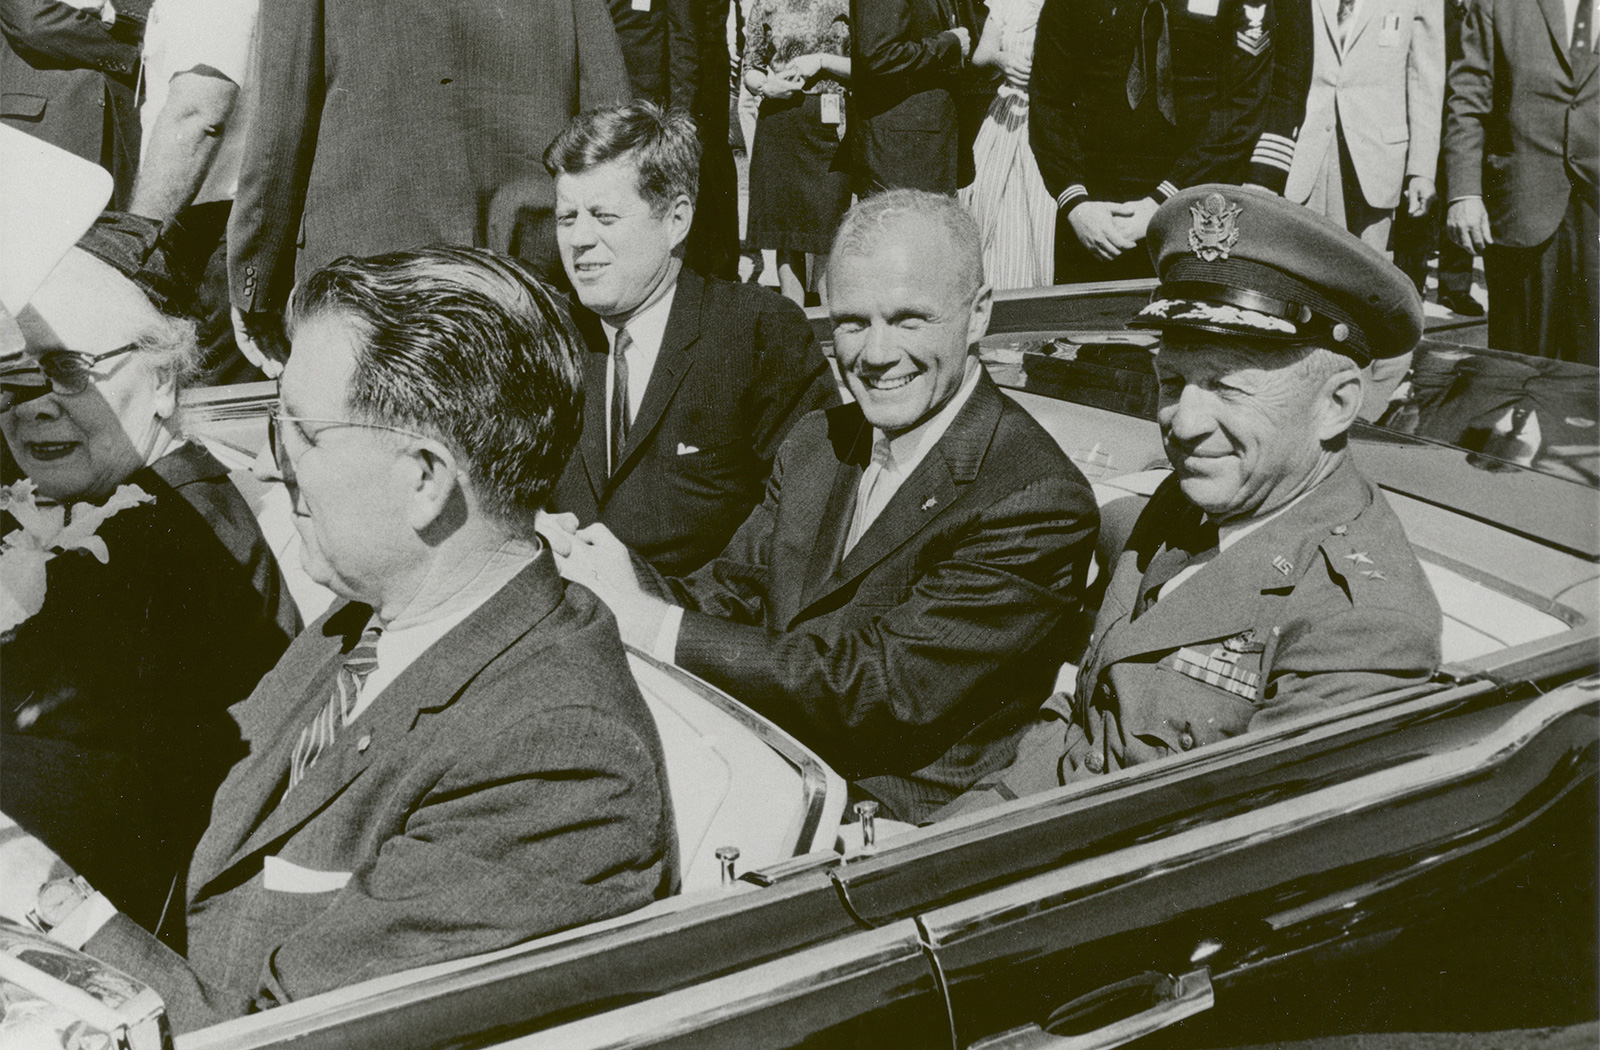 President John F. Kennedy and John Glenn